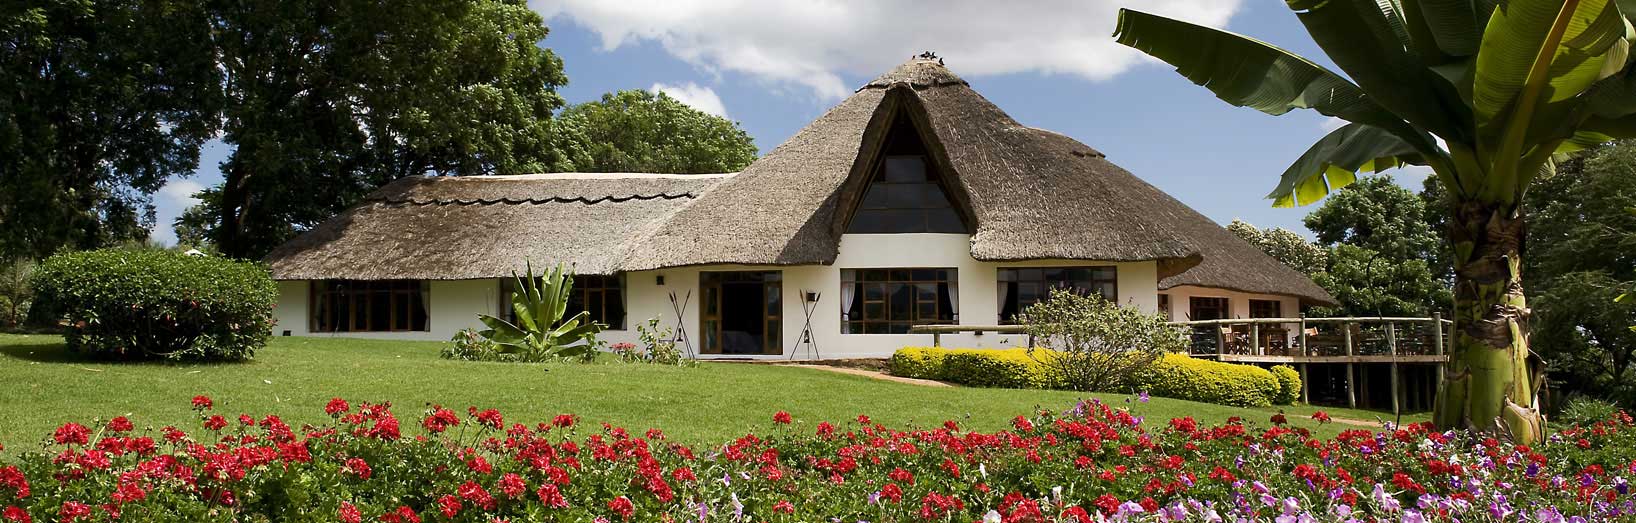 Ngorongoro Farmhouse